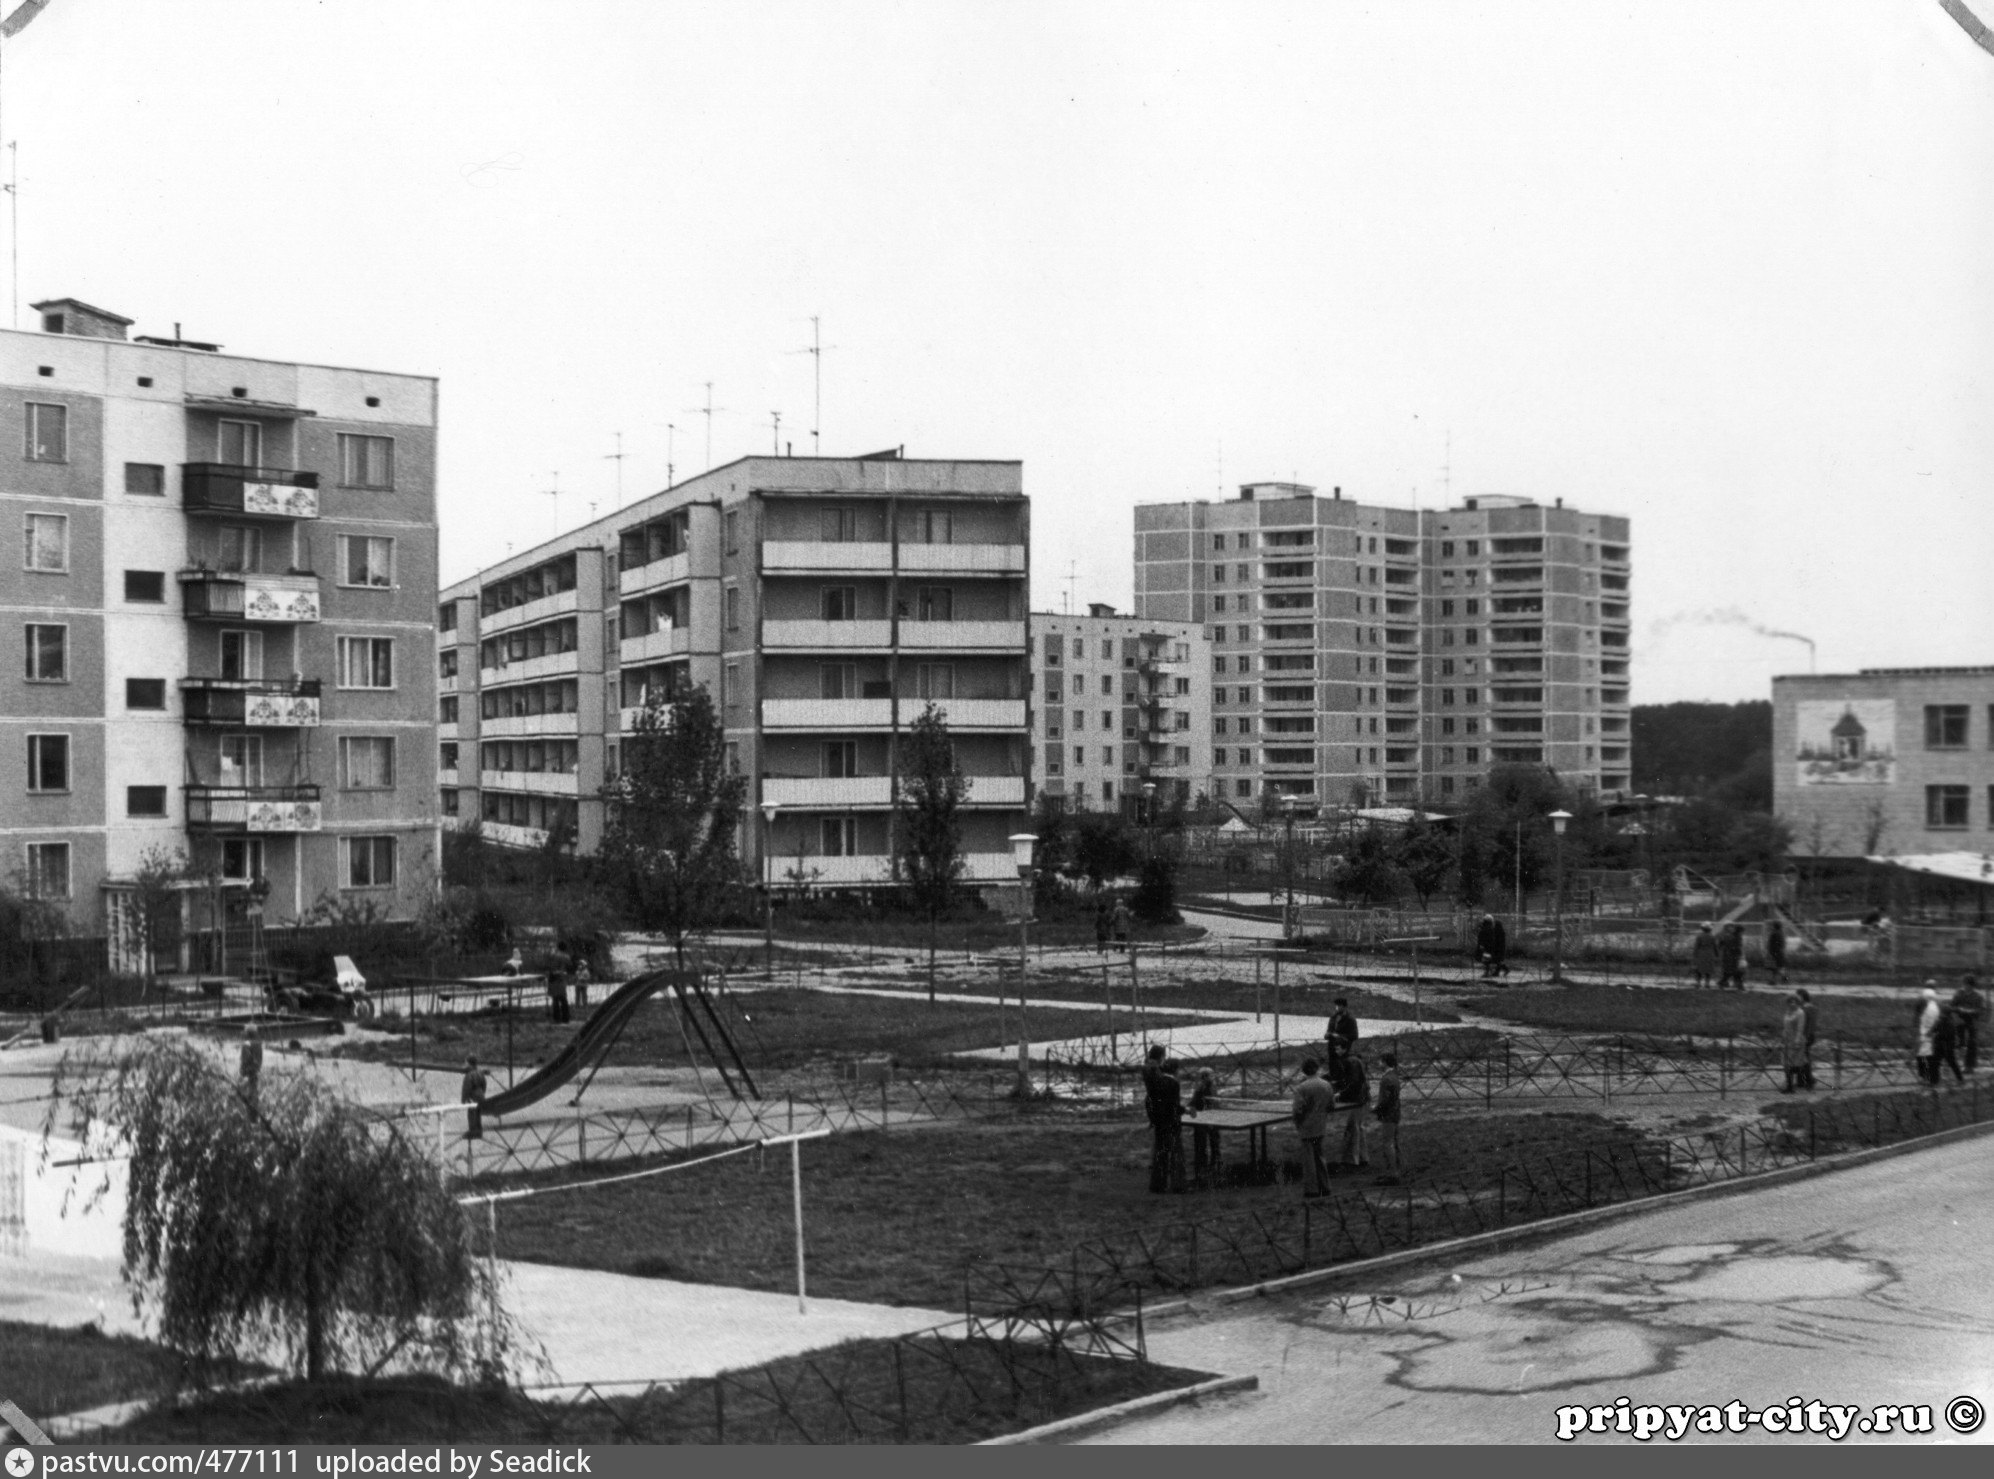 Припять до аварии. Город Припять Чернобыль до аварии. Улицы Припяти до аварии. Припять 1970.